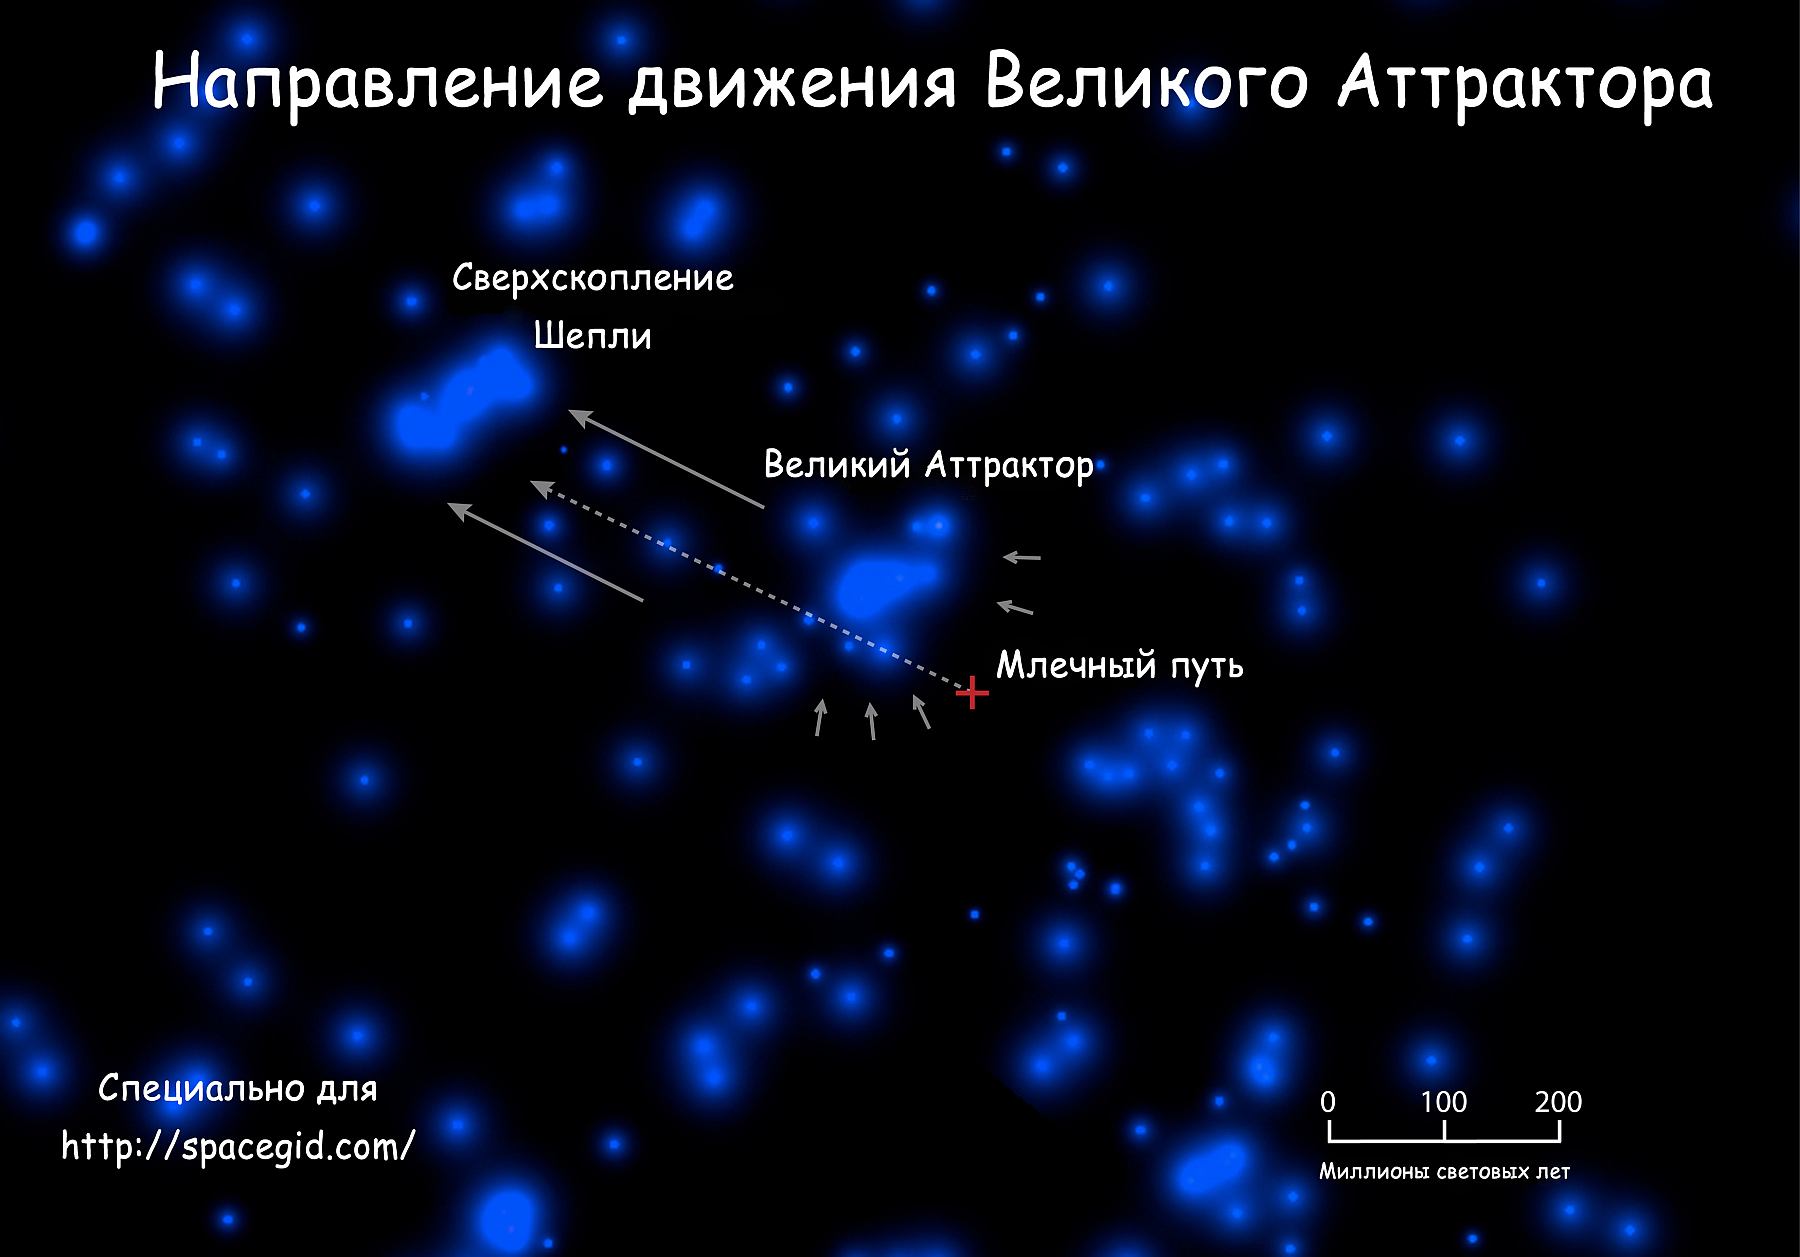 Через какие созвездия проходит млечный путь. +Великий +аттрактор +Млечный +путь. Сверхскопление Шепли и Великий аттрактор. Великий аттрактор гравитационная аномалия. Великий аттрактор на карте Вселенной.